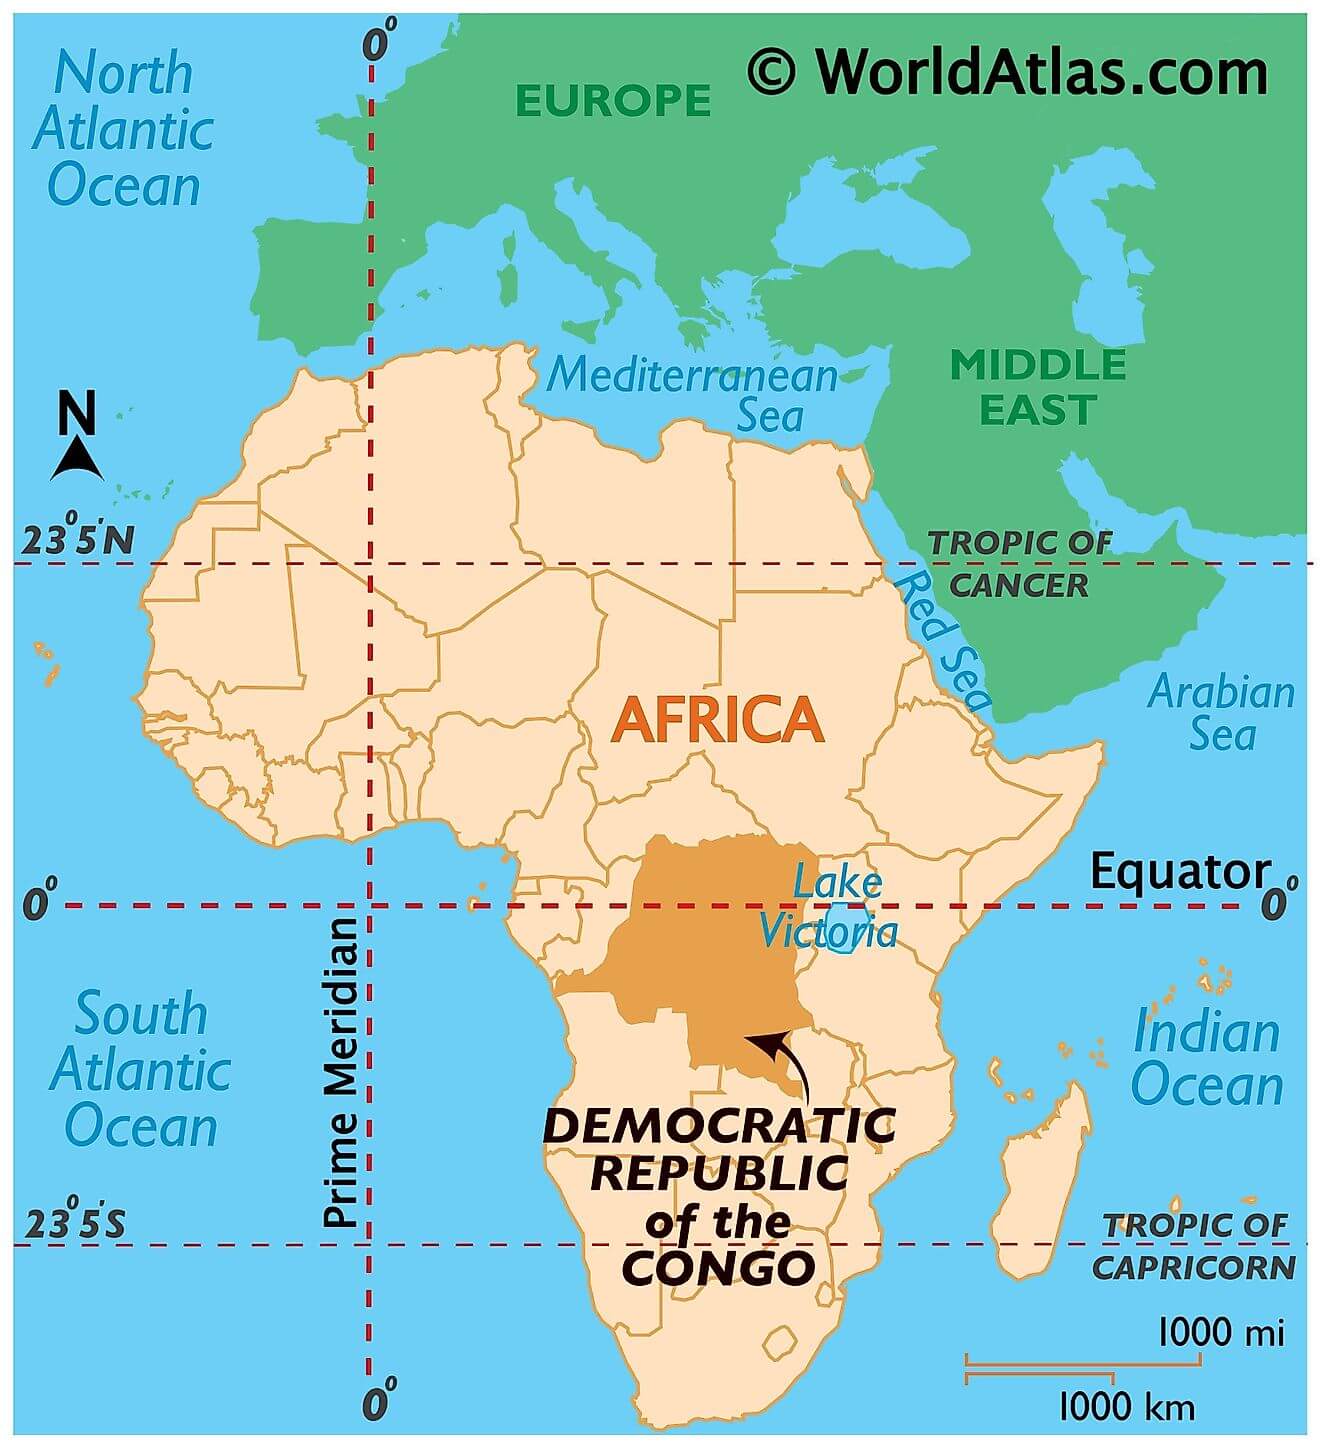 Cộng hòa Dân chủ Congo ở đâu?